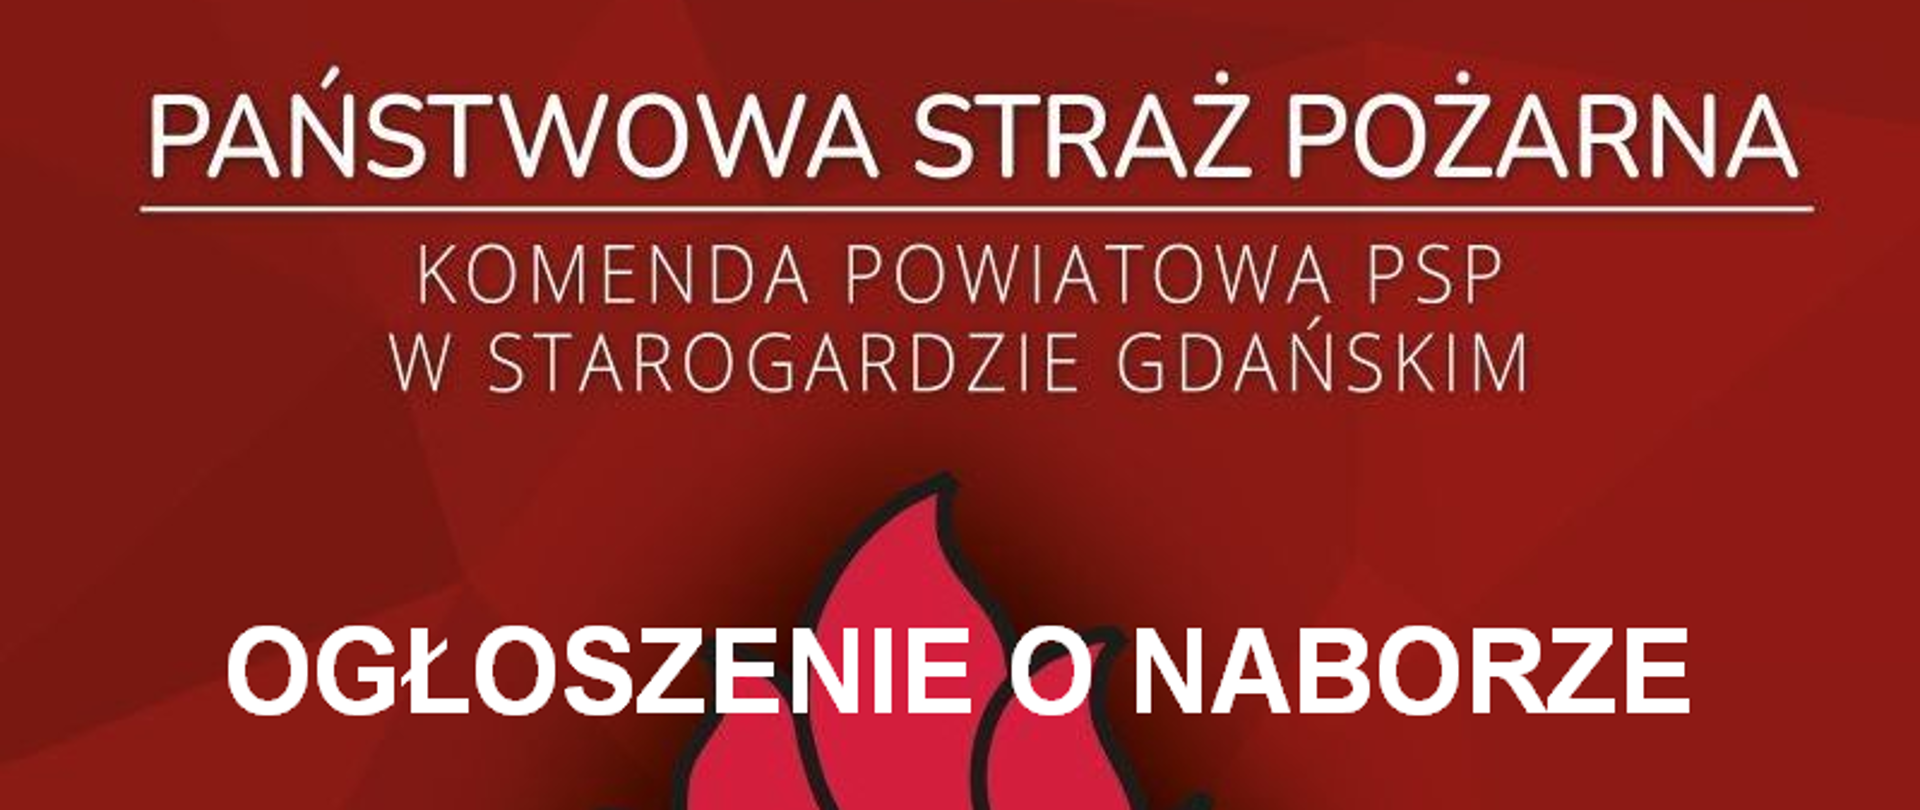 Informacja o naborze na stanowisko stażysty, w tle napis Państwowa Straż Pożarna w Starogardzie Gdańskim